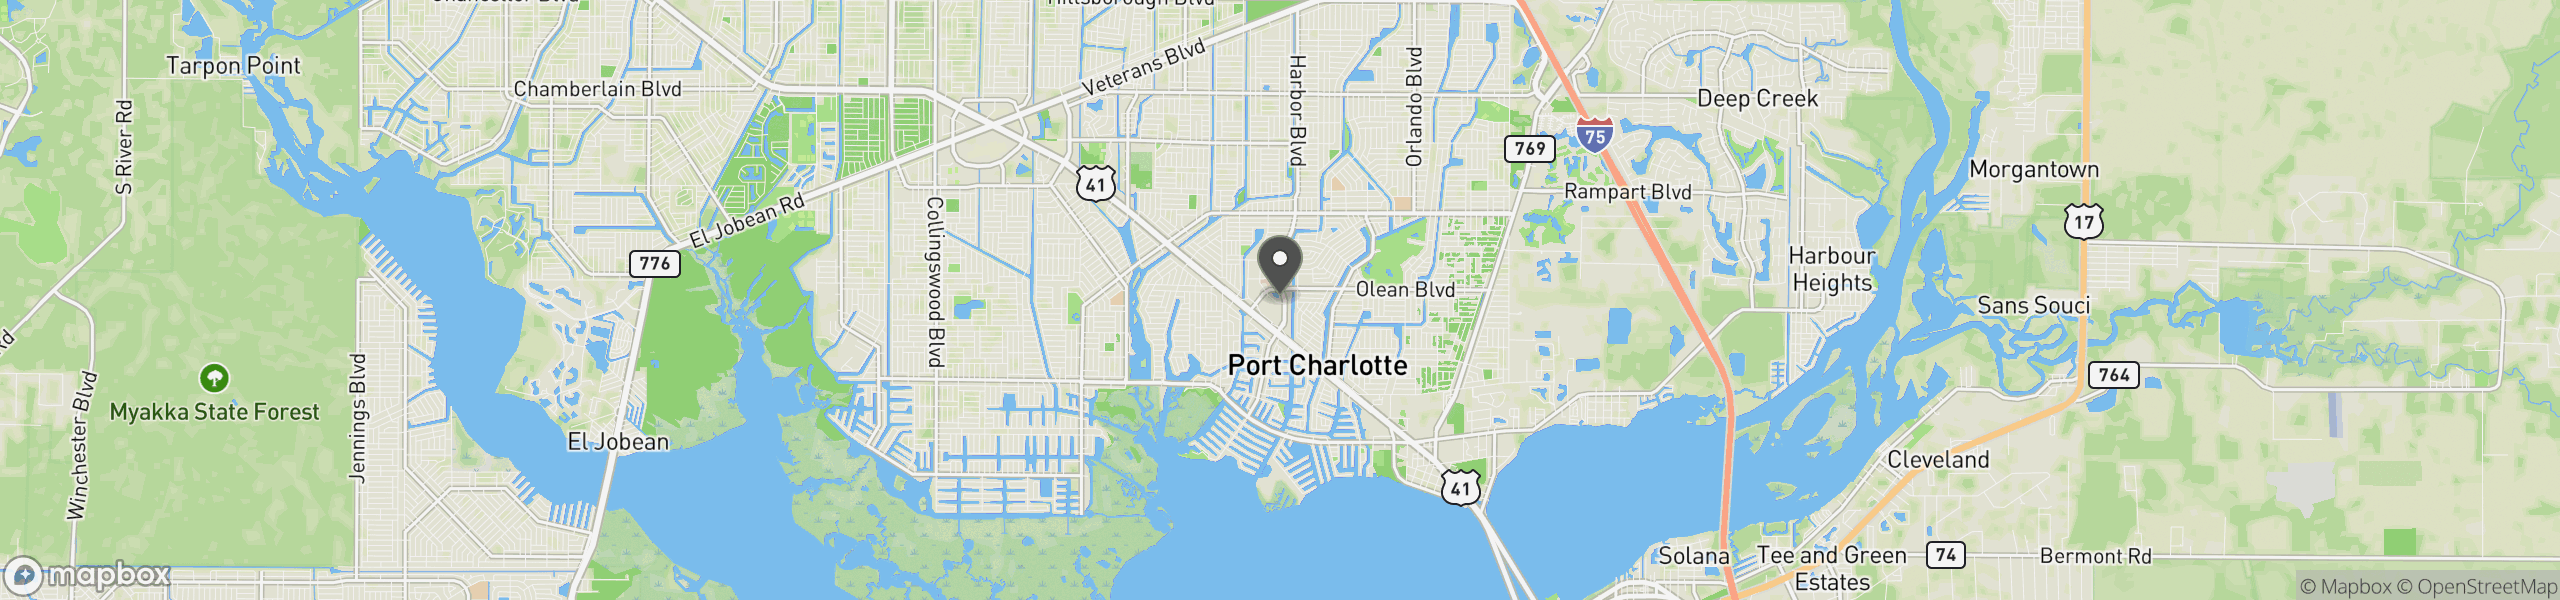 Port Charlotte, FL 33952